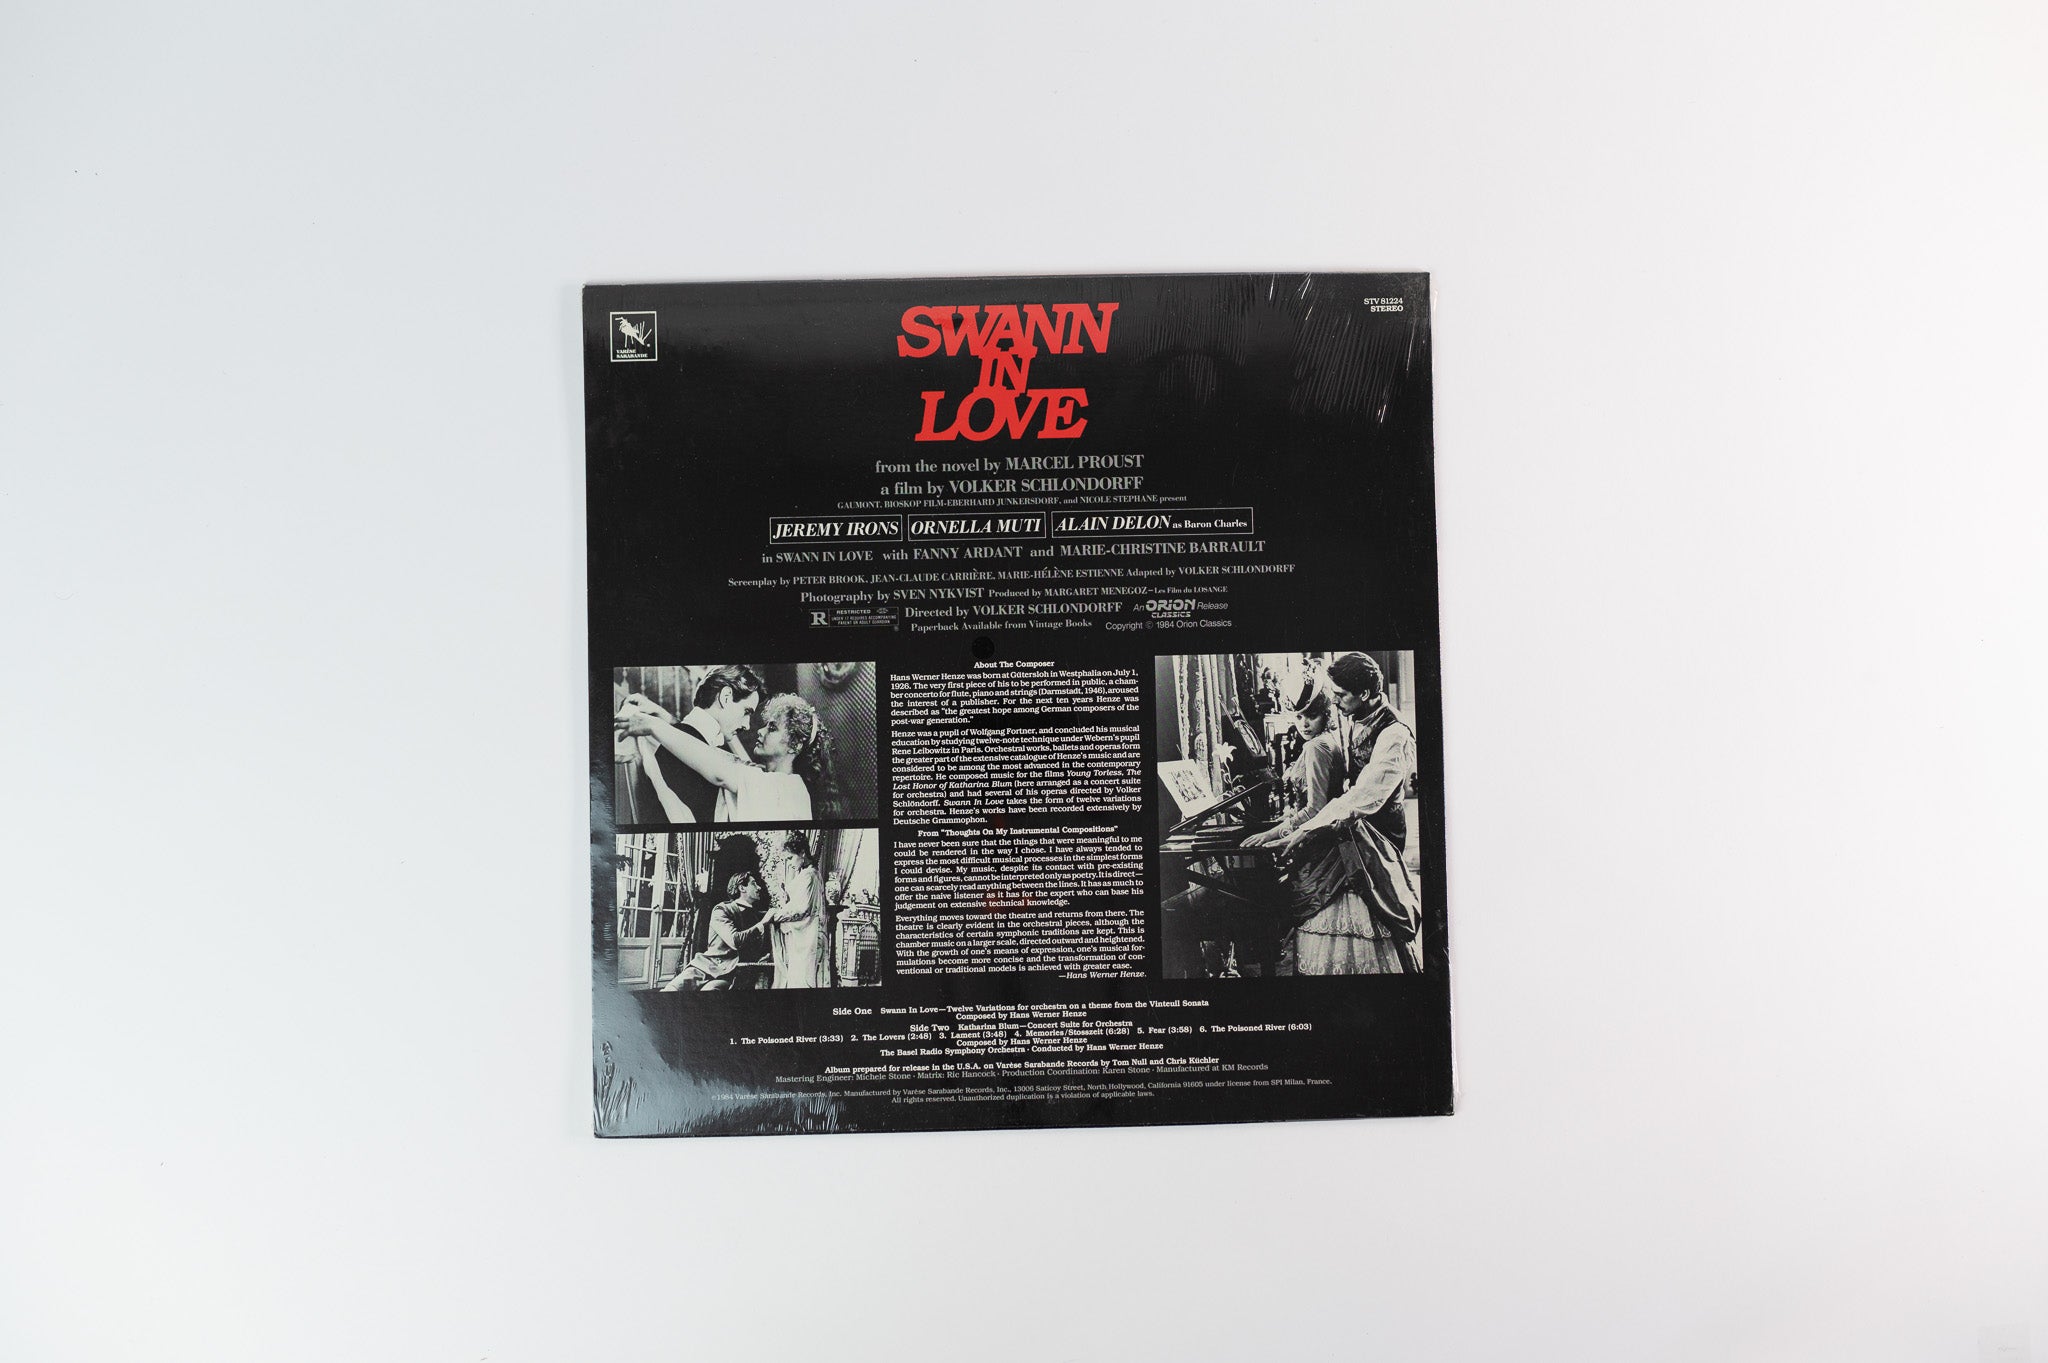 Hans Werner Henze - Swann In Love Original Soundtrack on Varese Sarabande Sealed